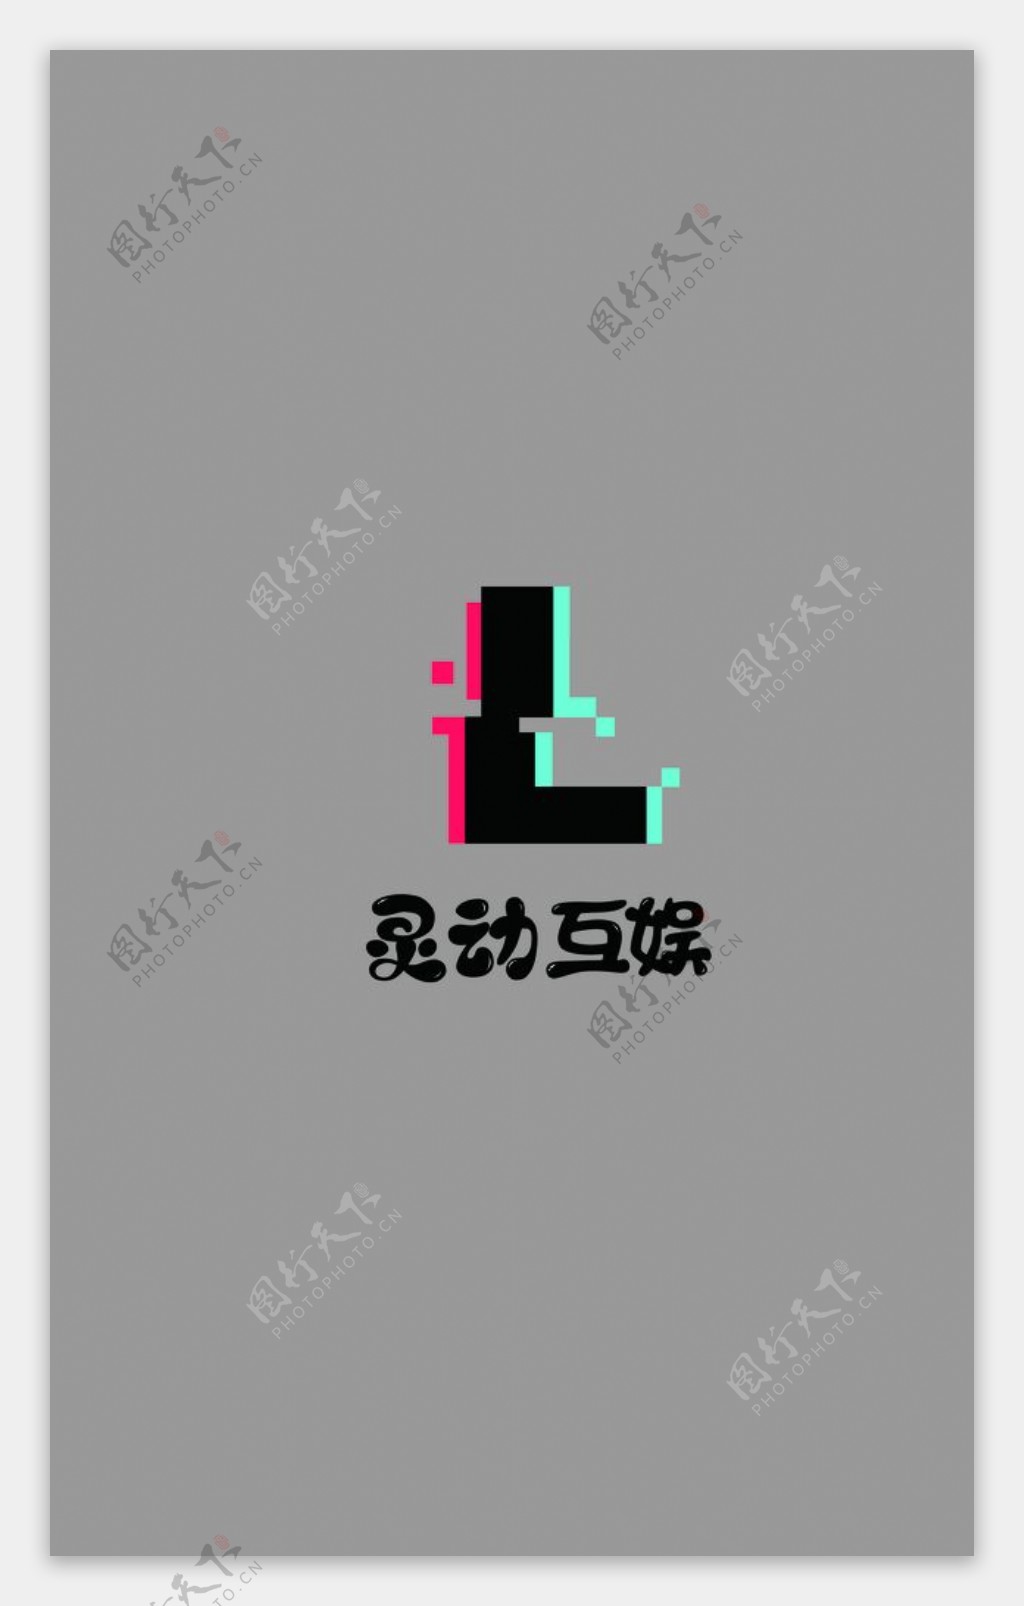 灵动互娱logo